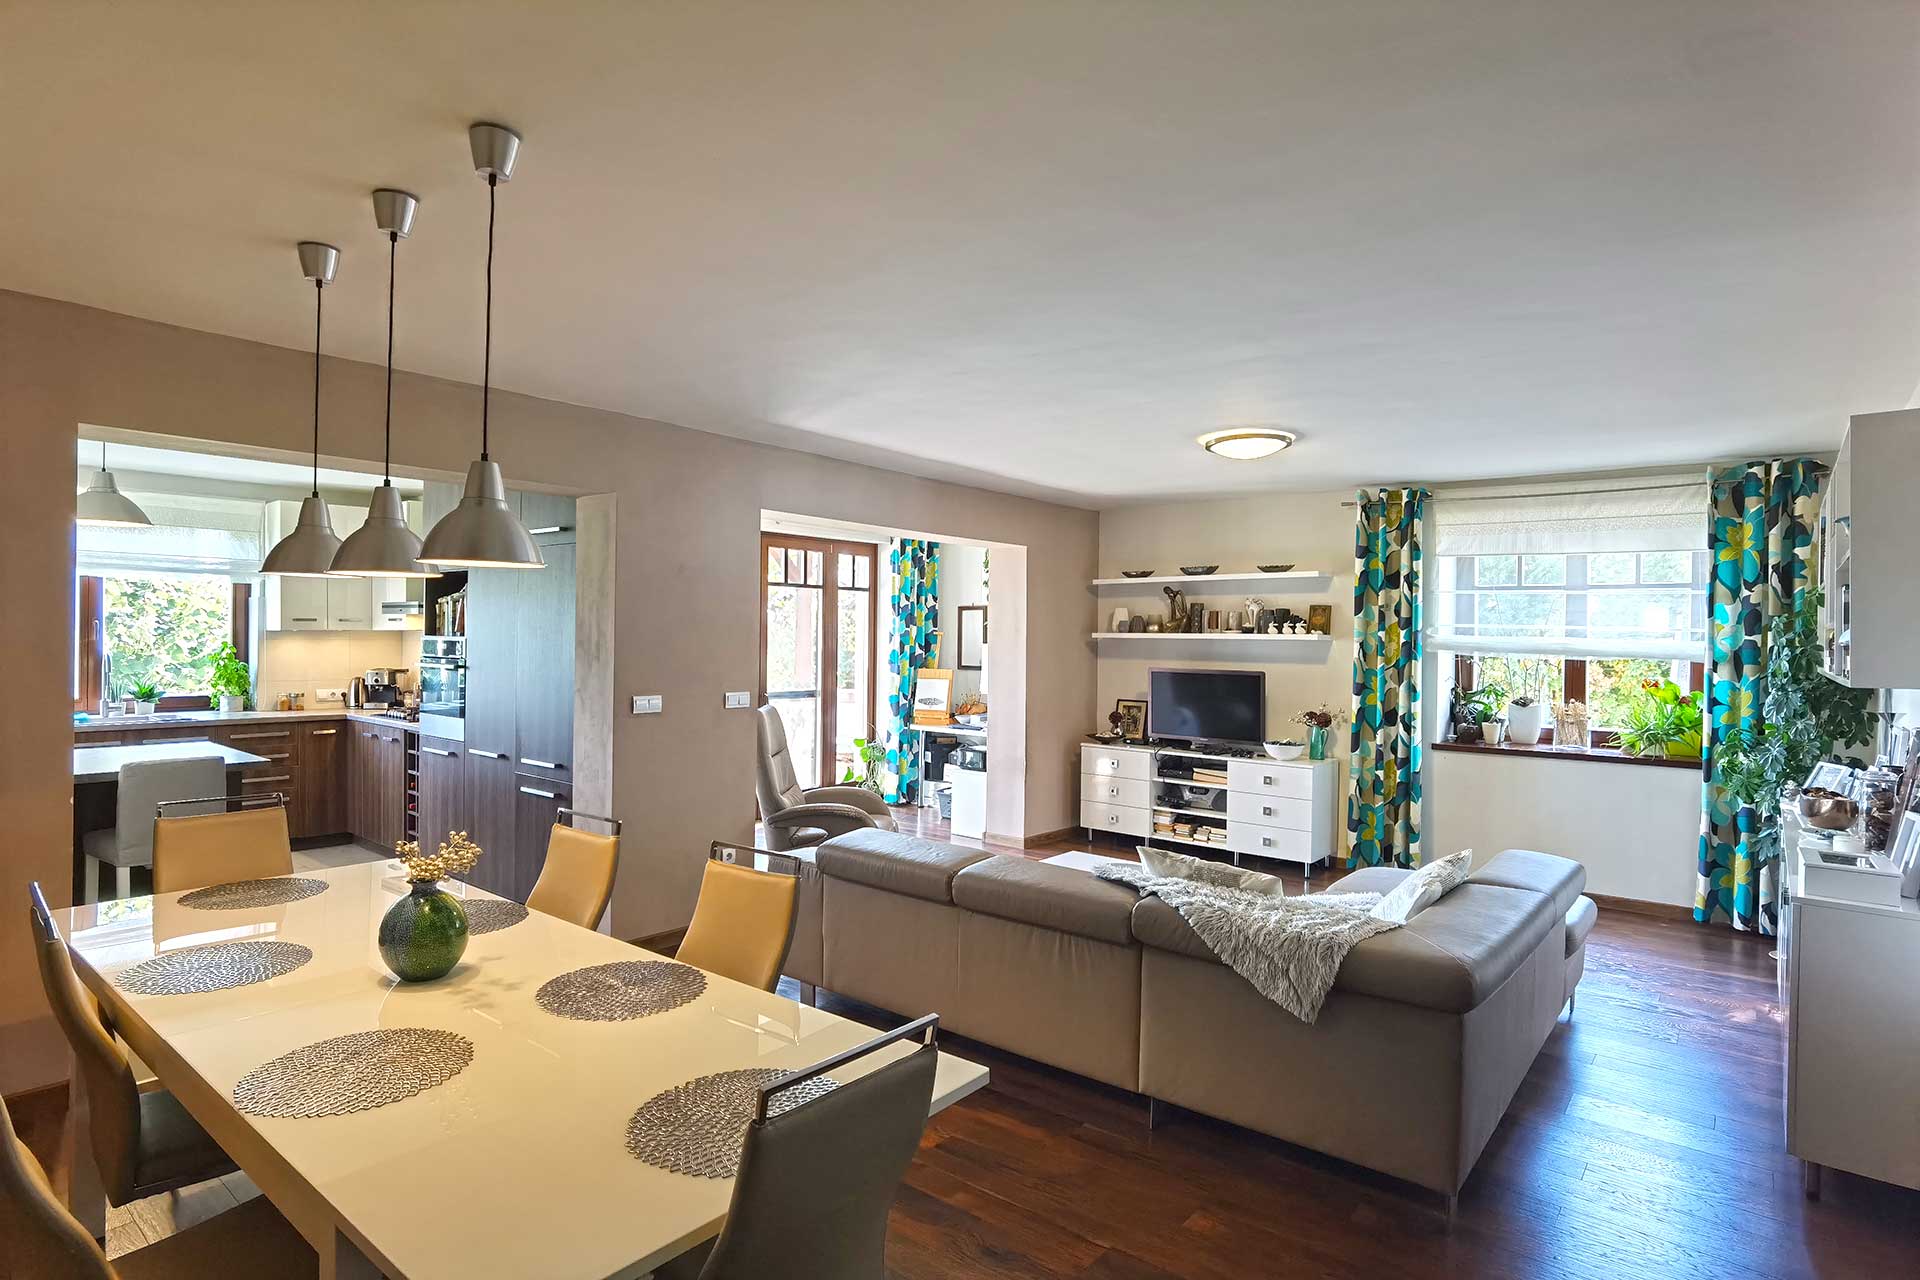 A balatoni panorámás eladó családi ház tágas, világos központi helyiségét a kényelmes otthonosság jellemzi. 